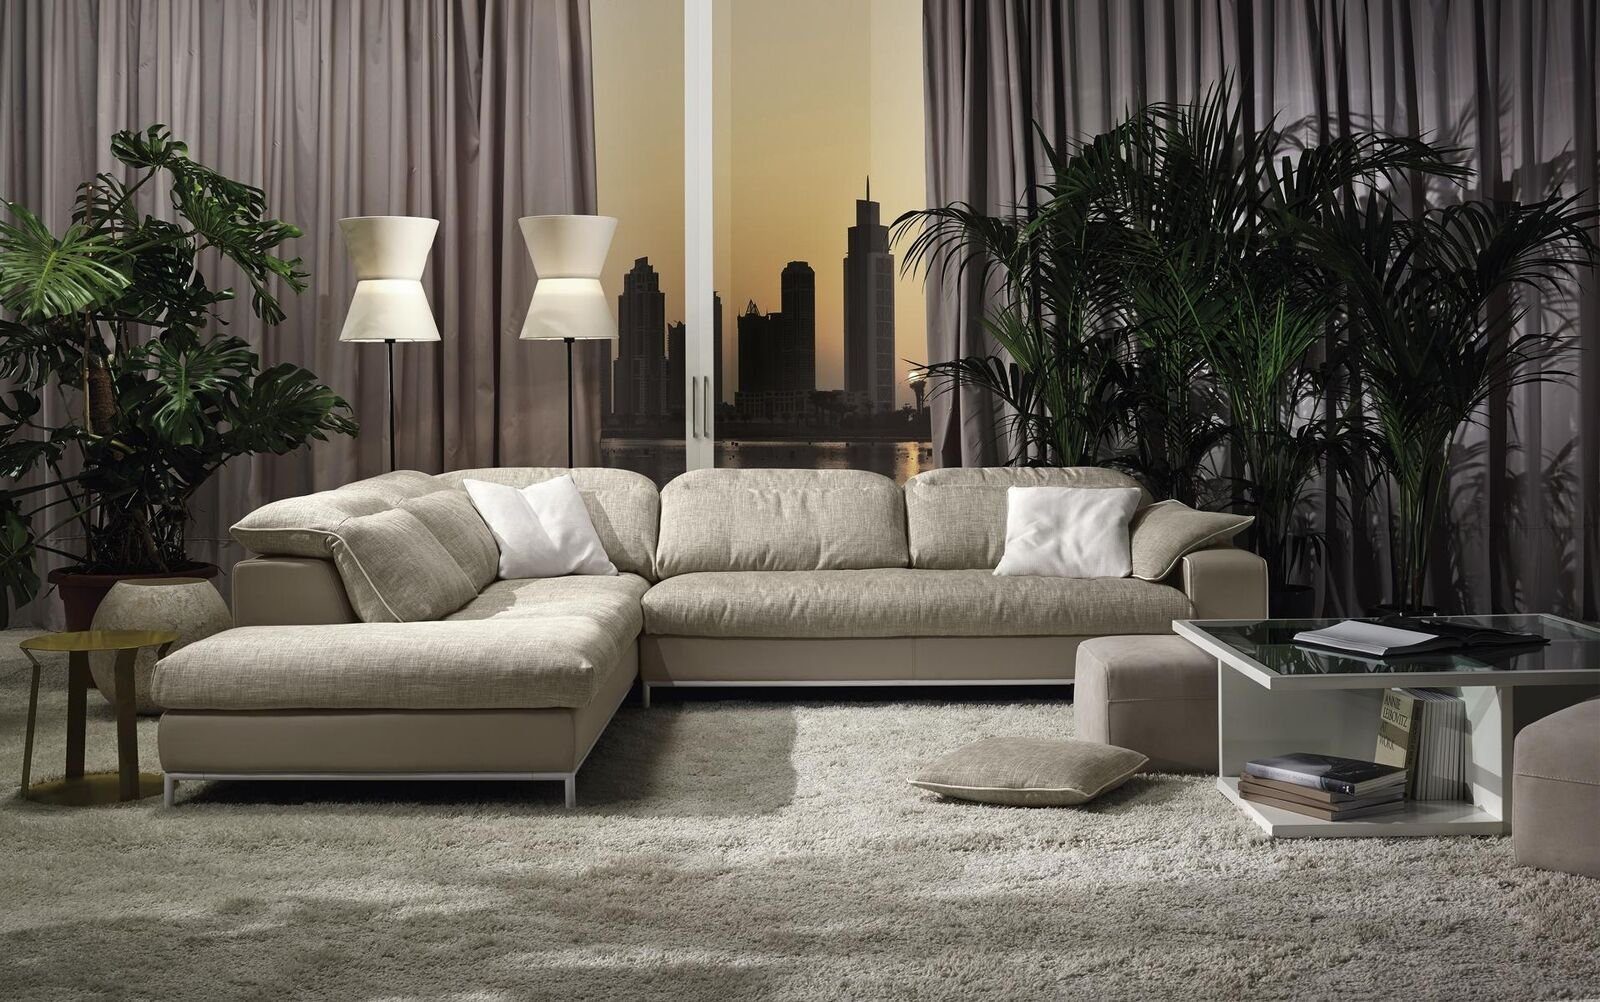 JVmoebel Ecksofa Design Ecksofa L-form Modern Sofas Textile Couch Wohnzimmer Modernes